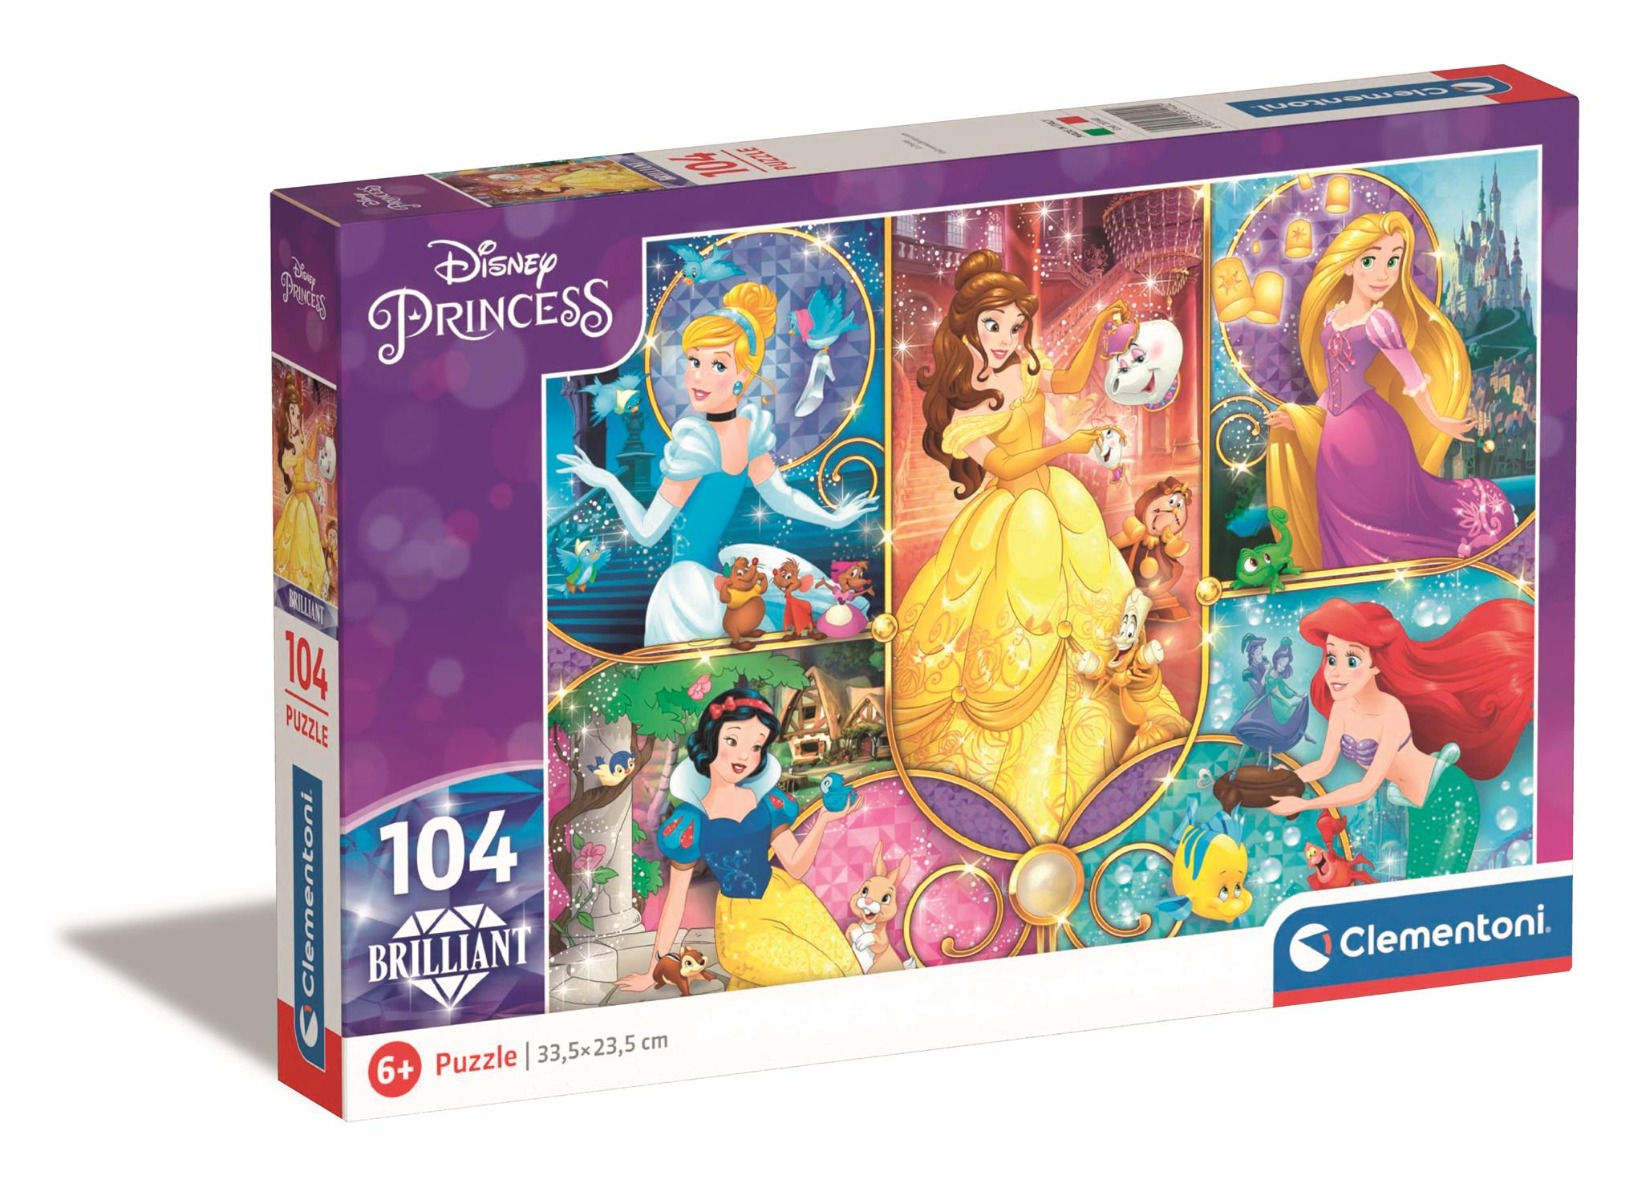 Poze Puzzle Clementoni Disney Princess Brilliant, 104 piese